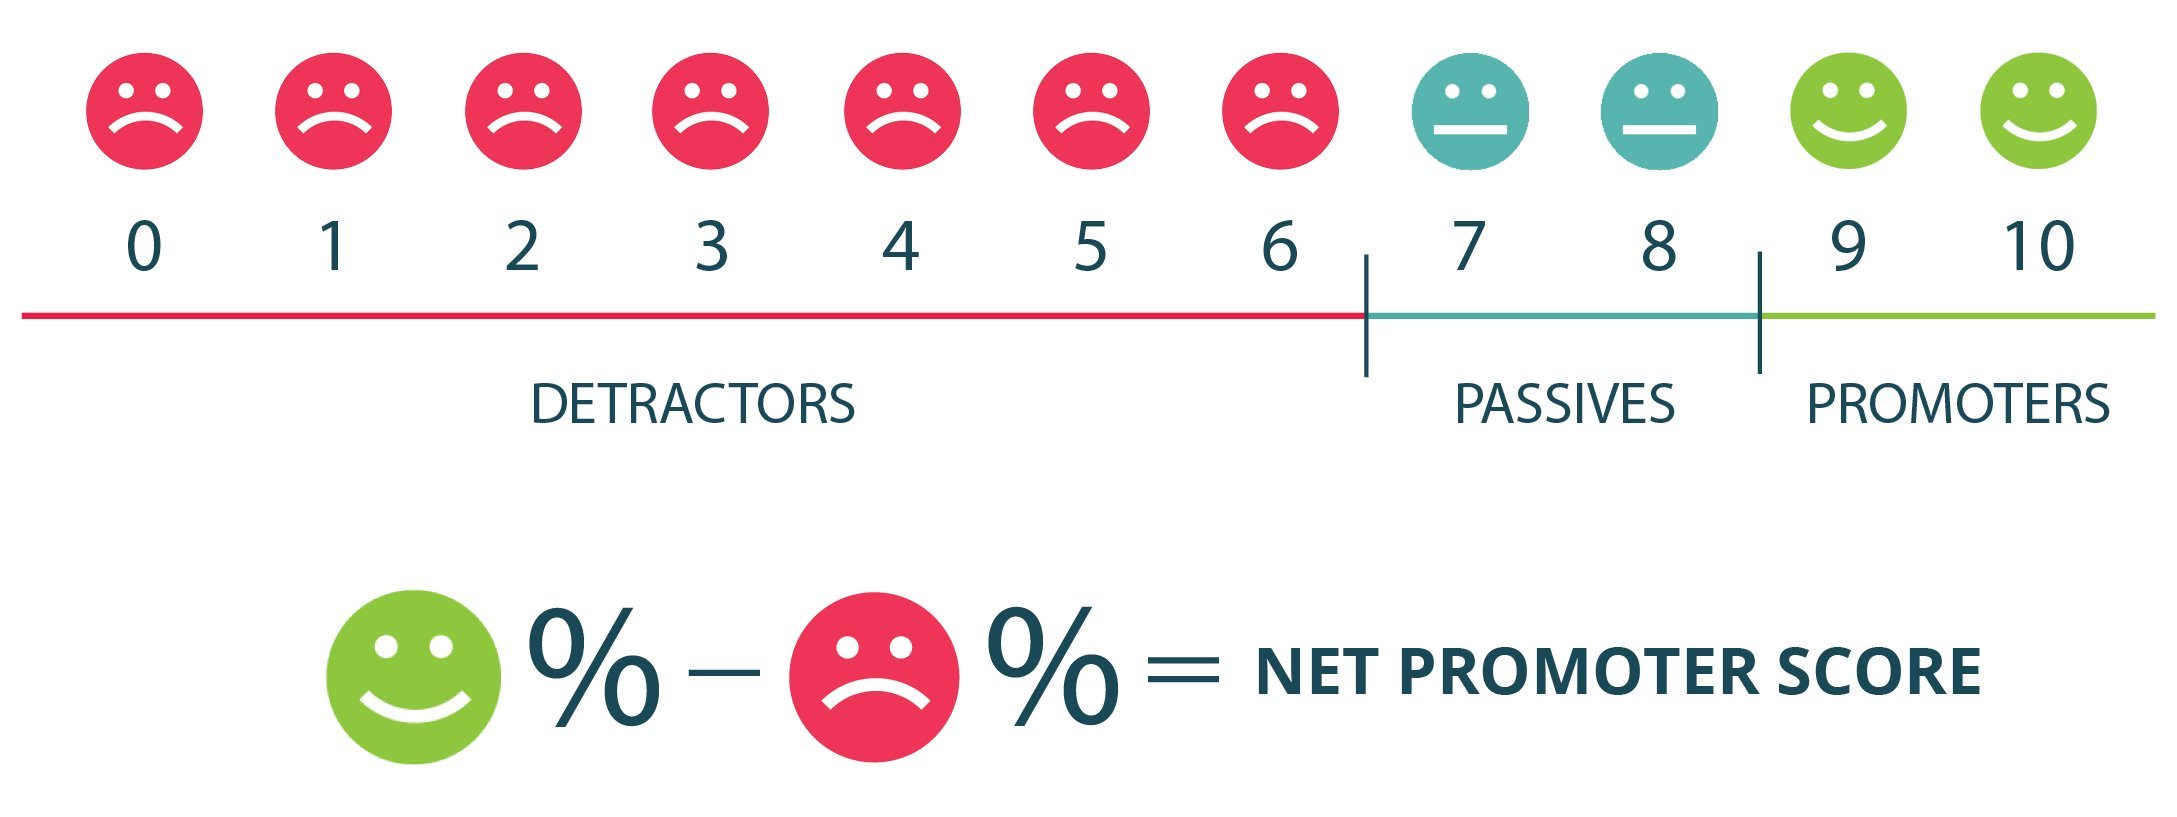 Net Promoter Score - NPS 